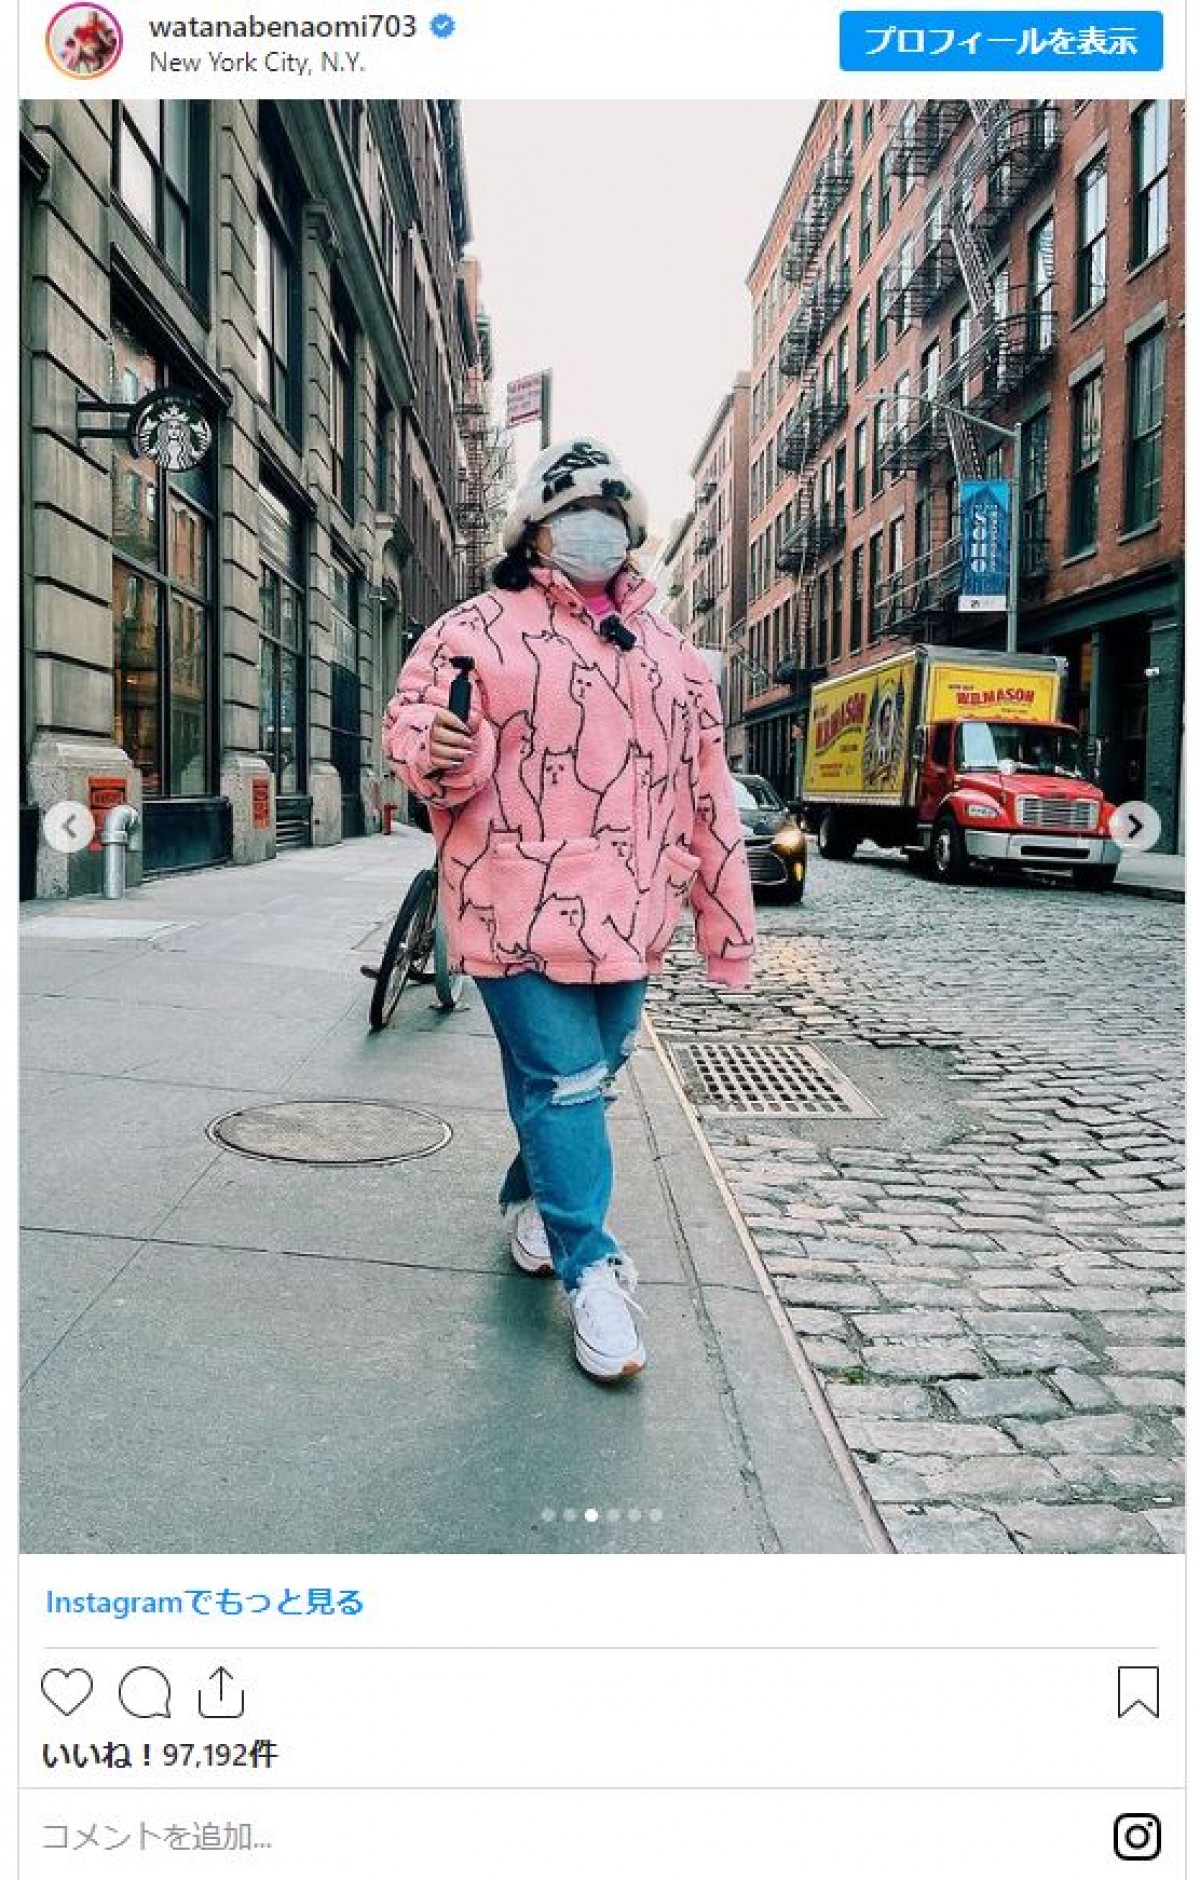 渡辺直美「見た目ただの不審者」ニューヨーク散策する姿に反響